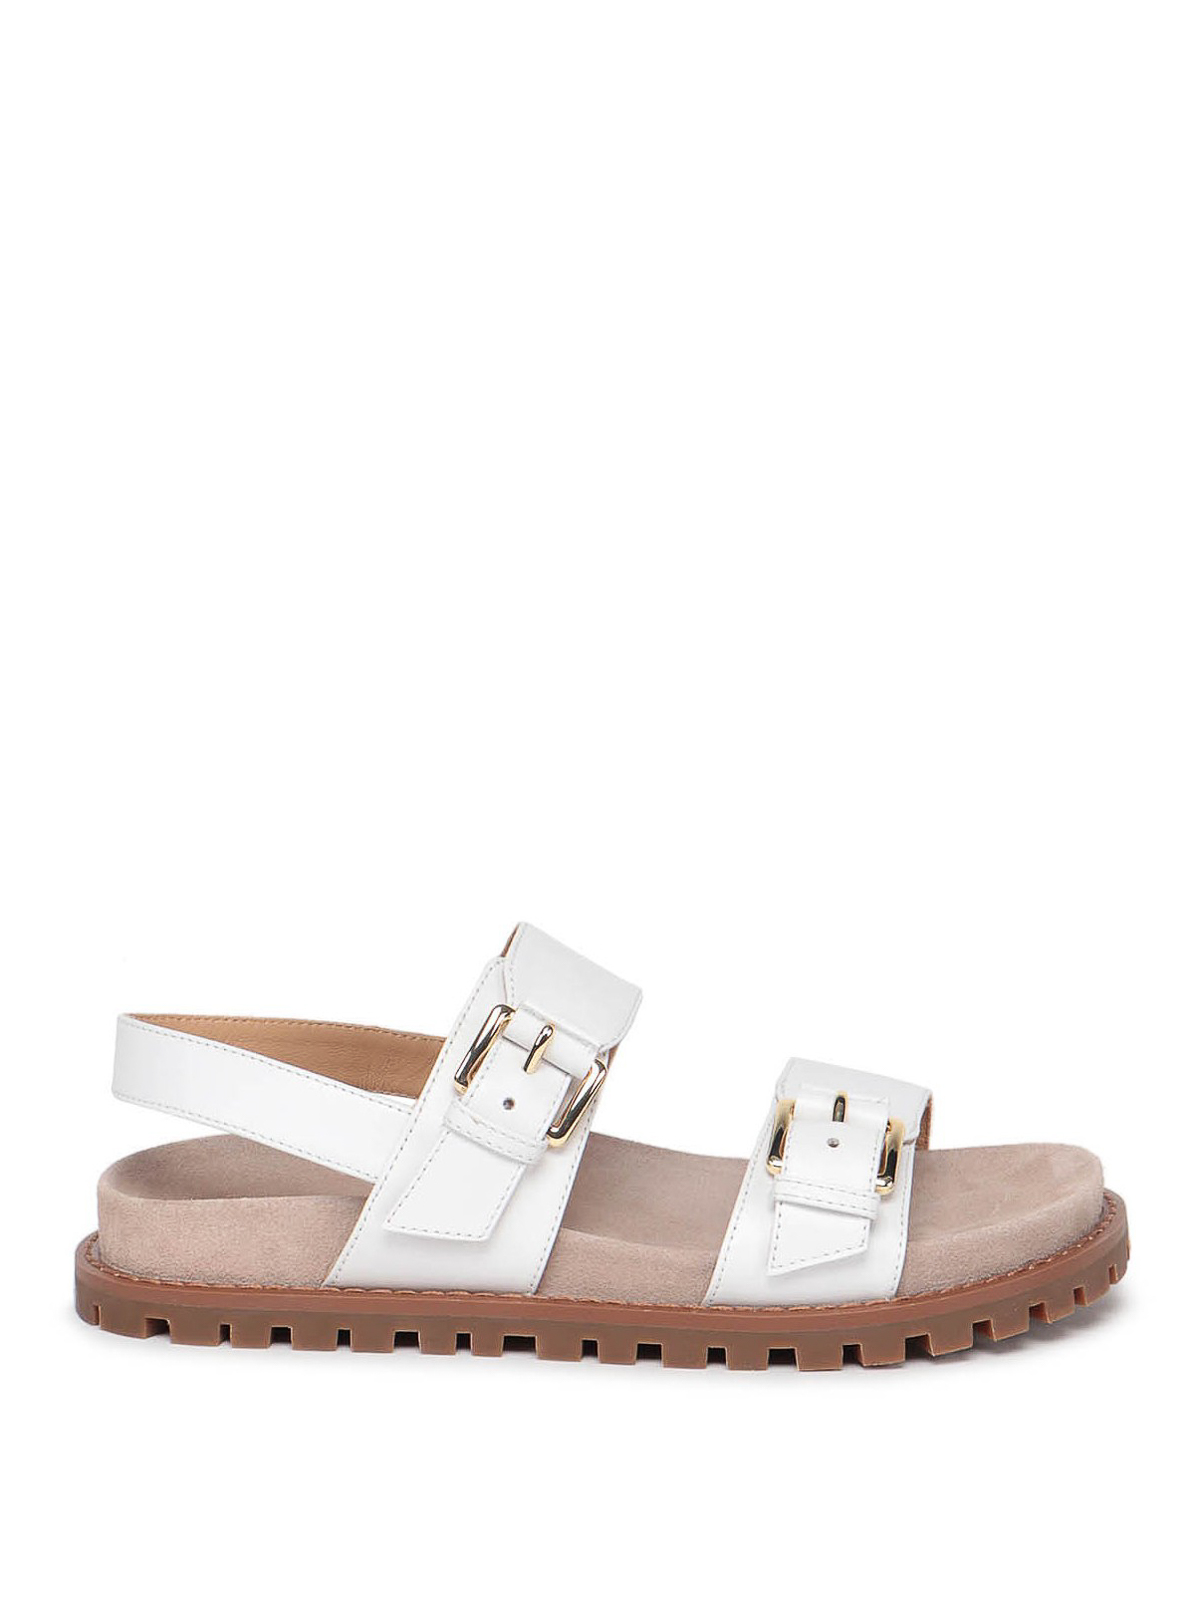 Sandals Michael Kors - Judd sandal - 40T1JUFA1L085 | Shop online at iKRIX